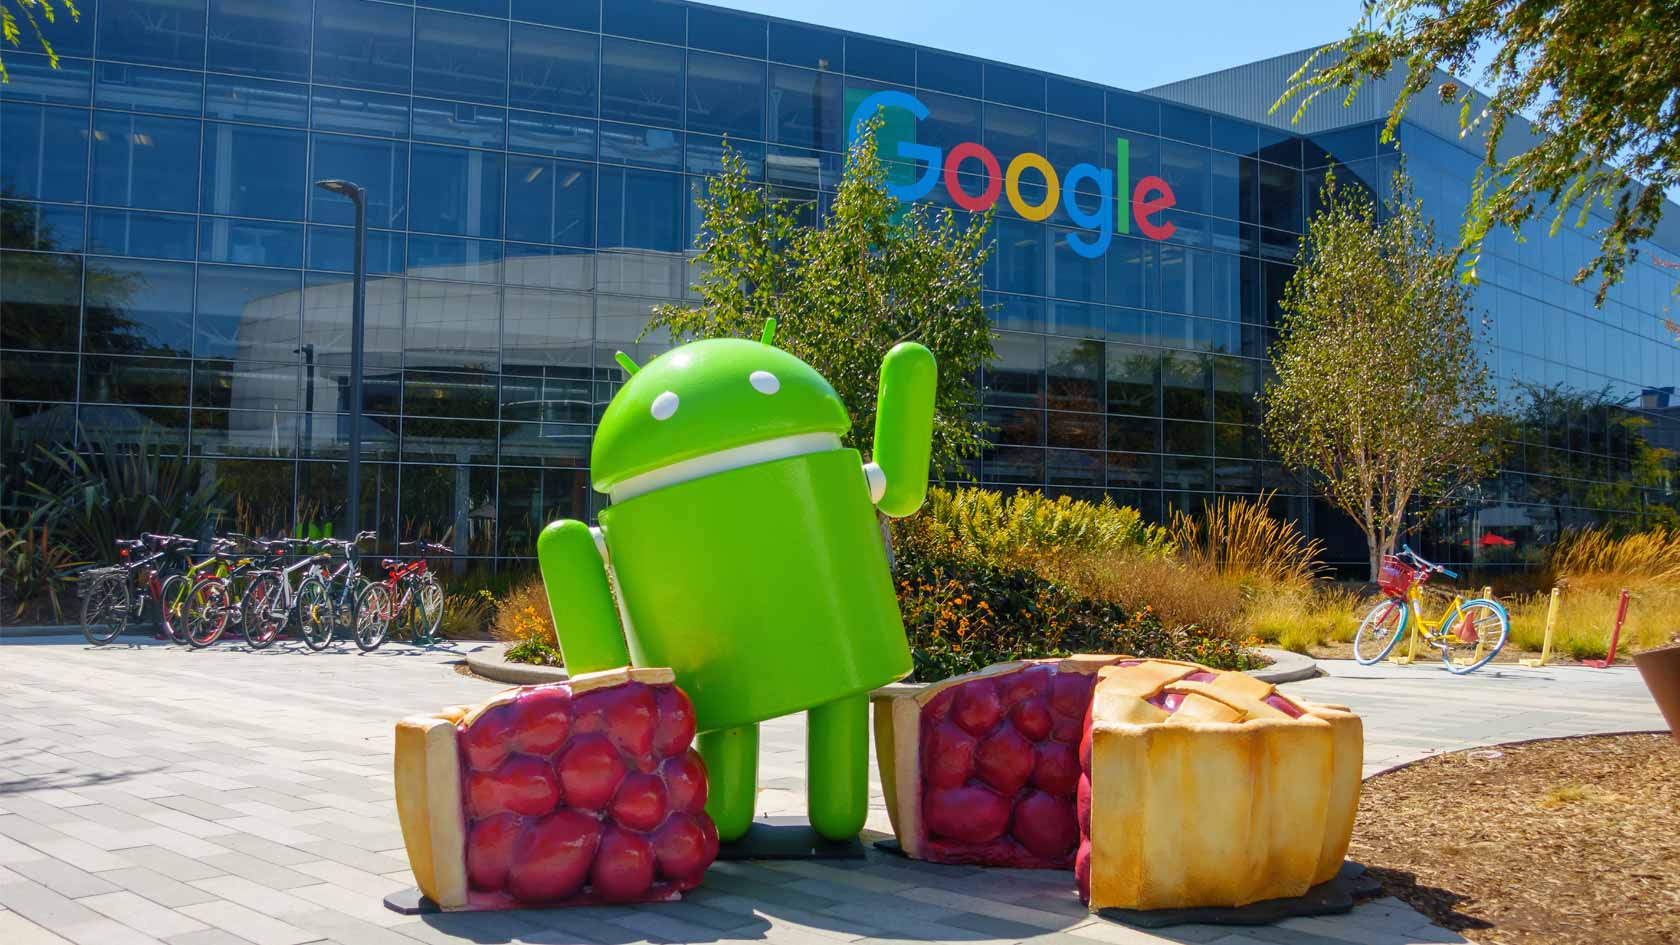 Google-staty framför Googles huvudkontor.